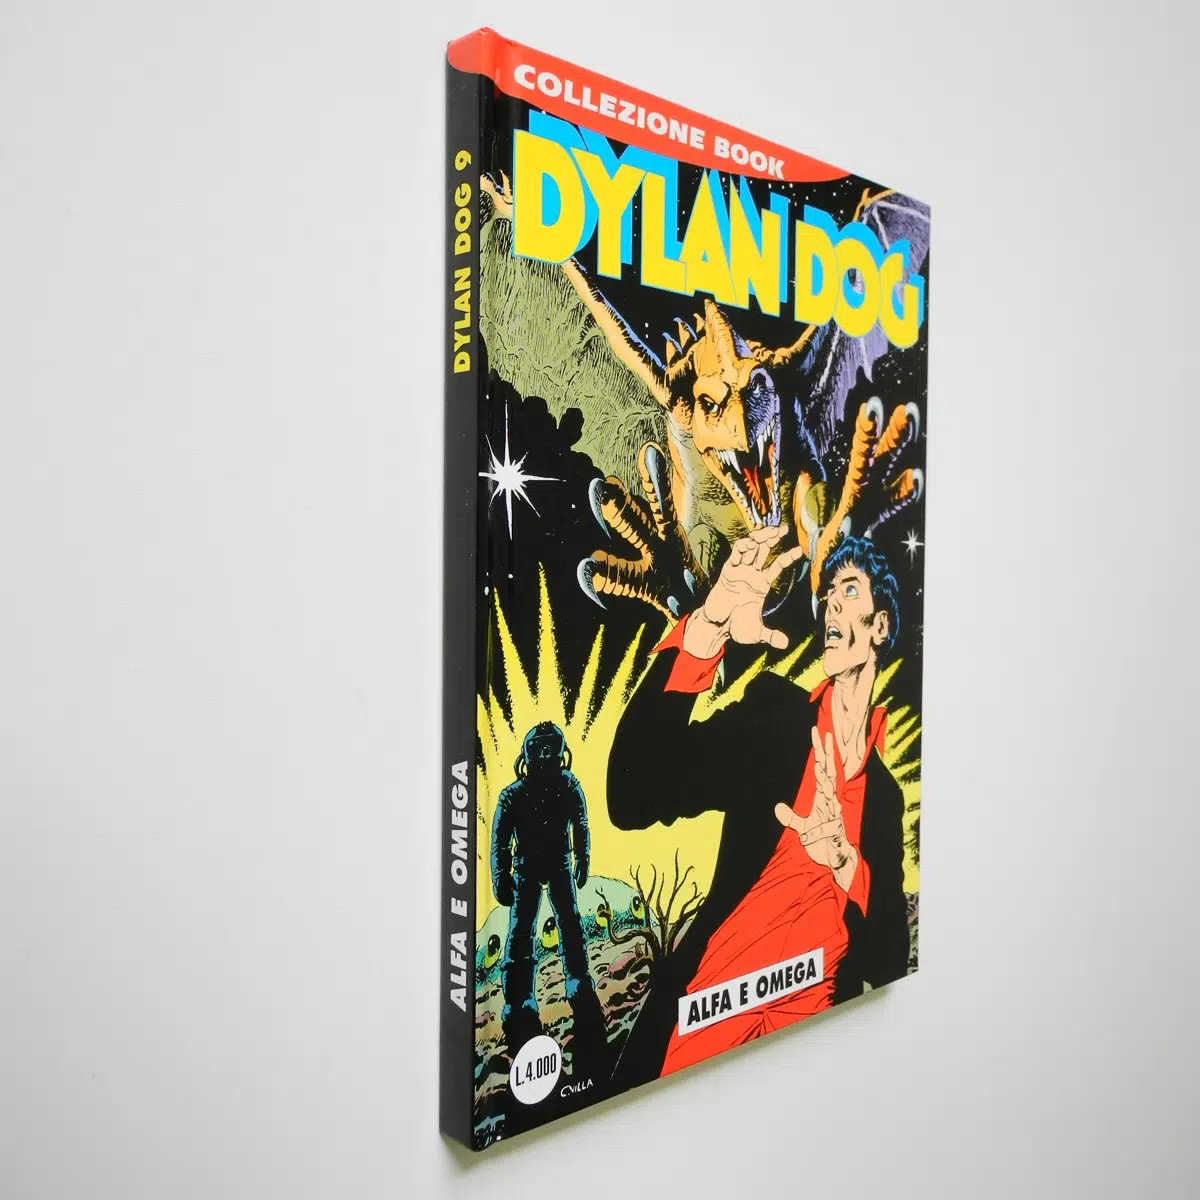 Dylan Dog Collezione Book 9 Alfa e Omega